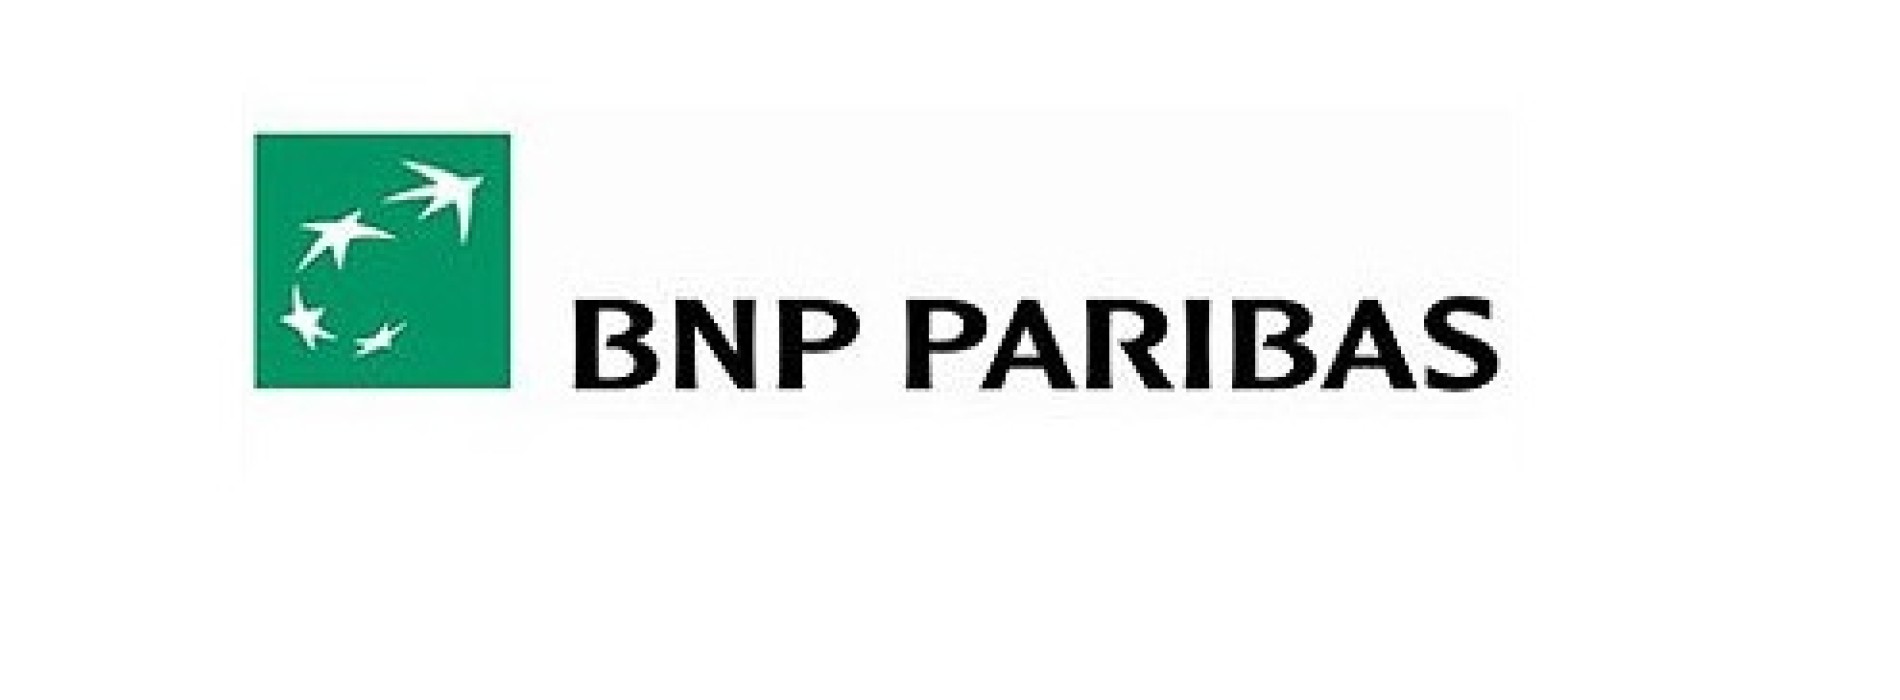 Energo leasing w ofercie BNP Paribas Banku Polska